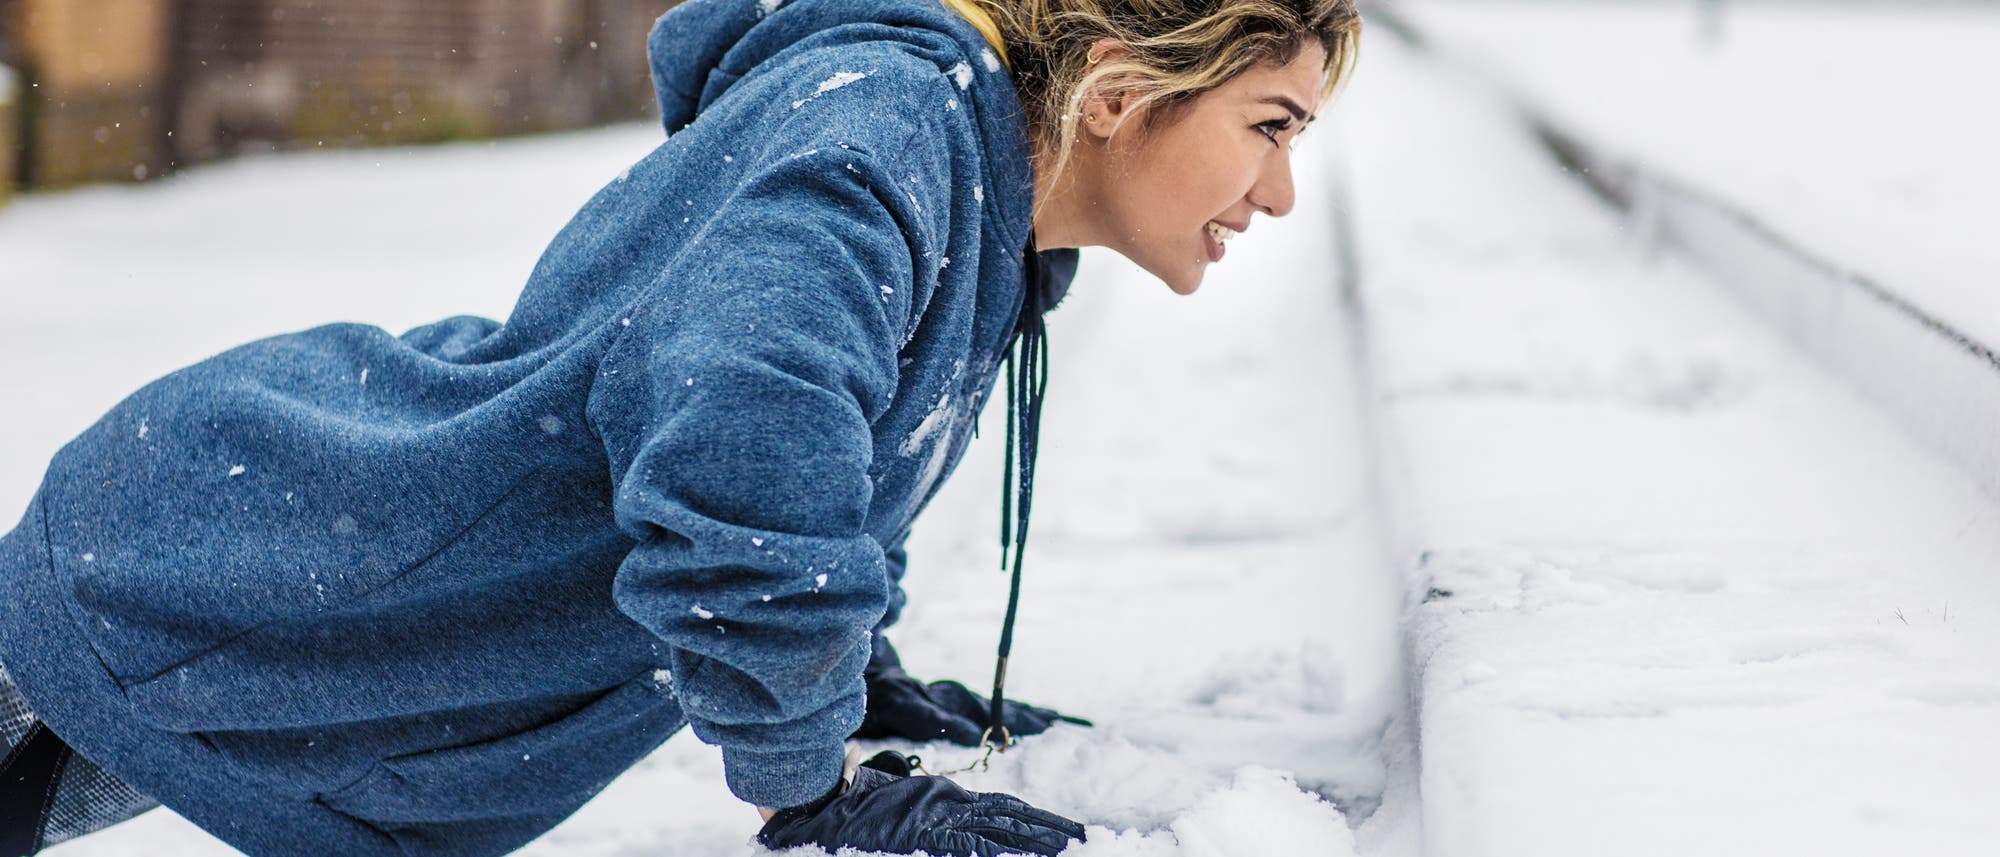 Sportlerin trainiert im Schnee